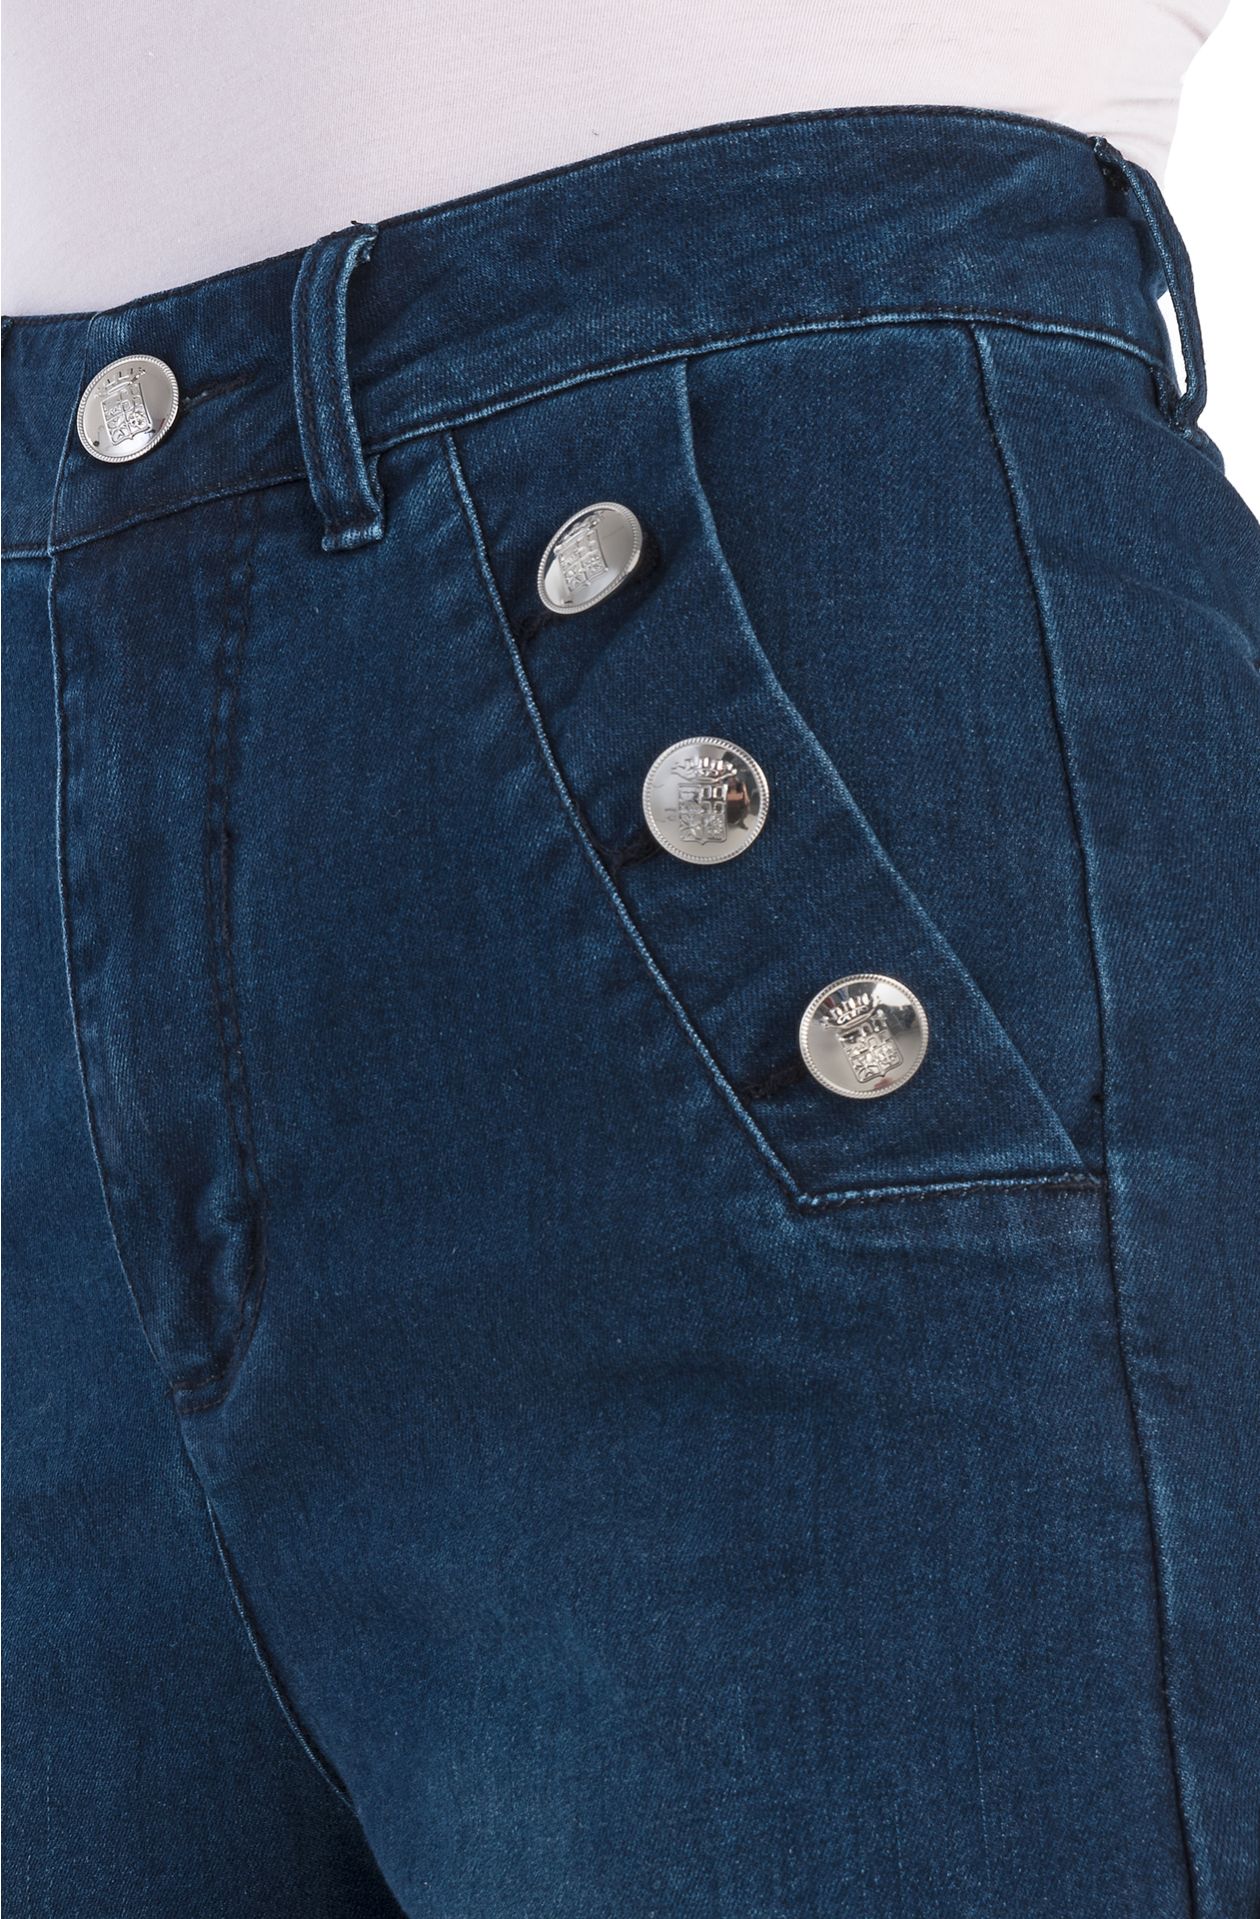 Jeans mit Metallknöpfen